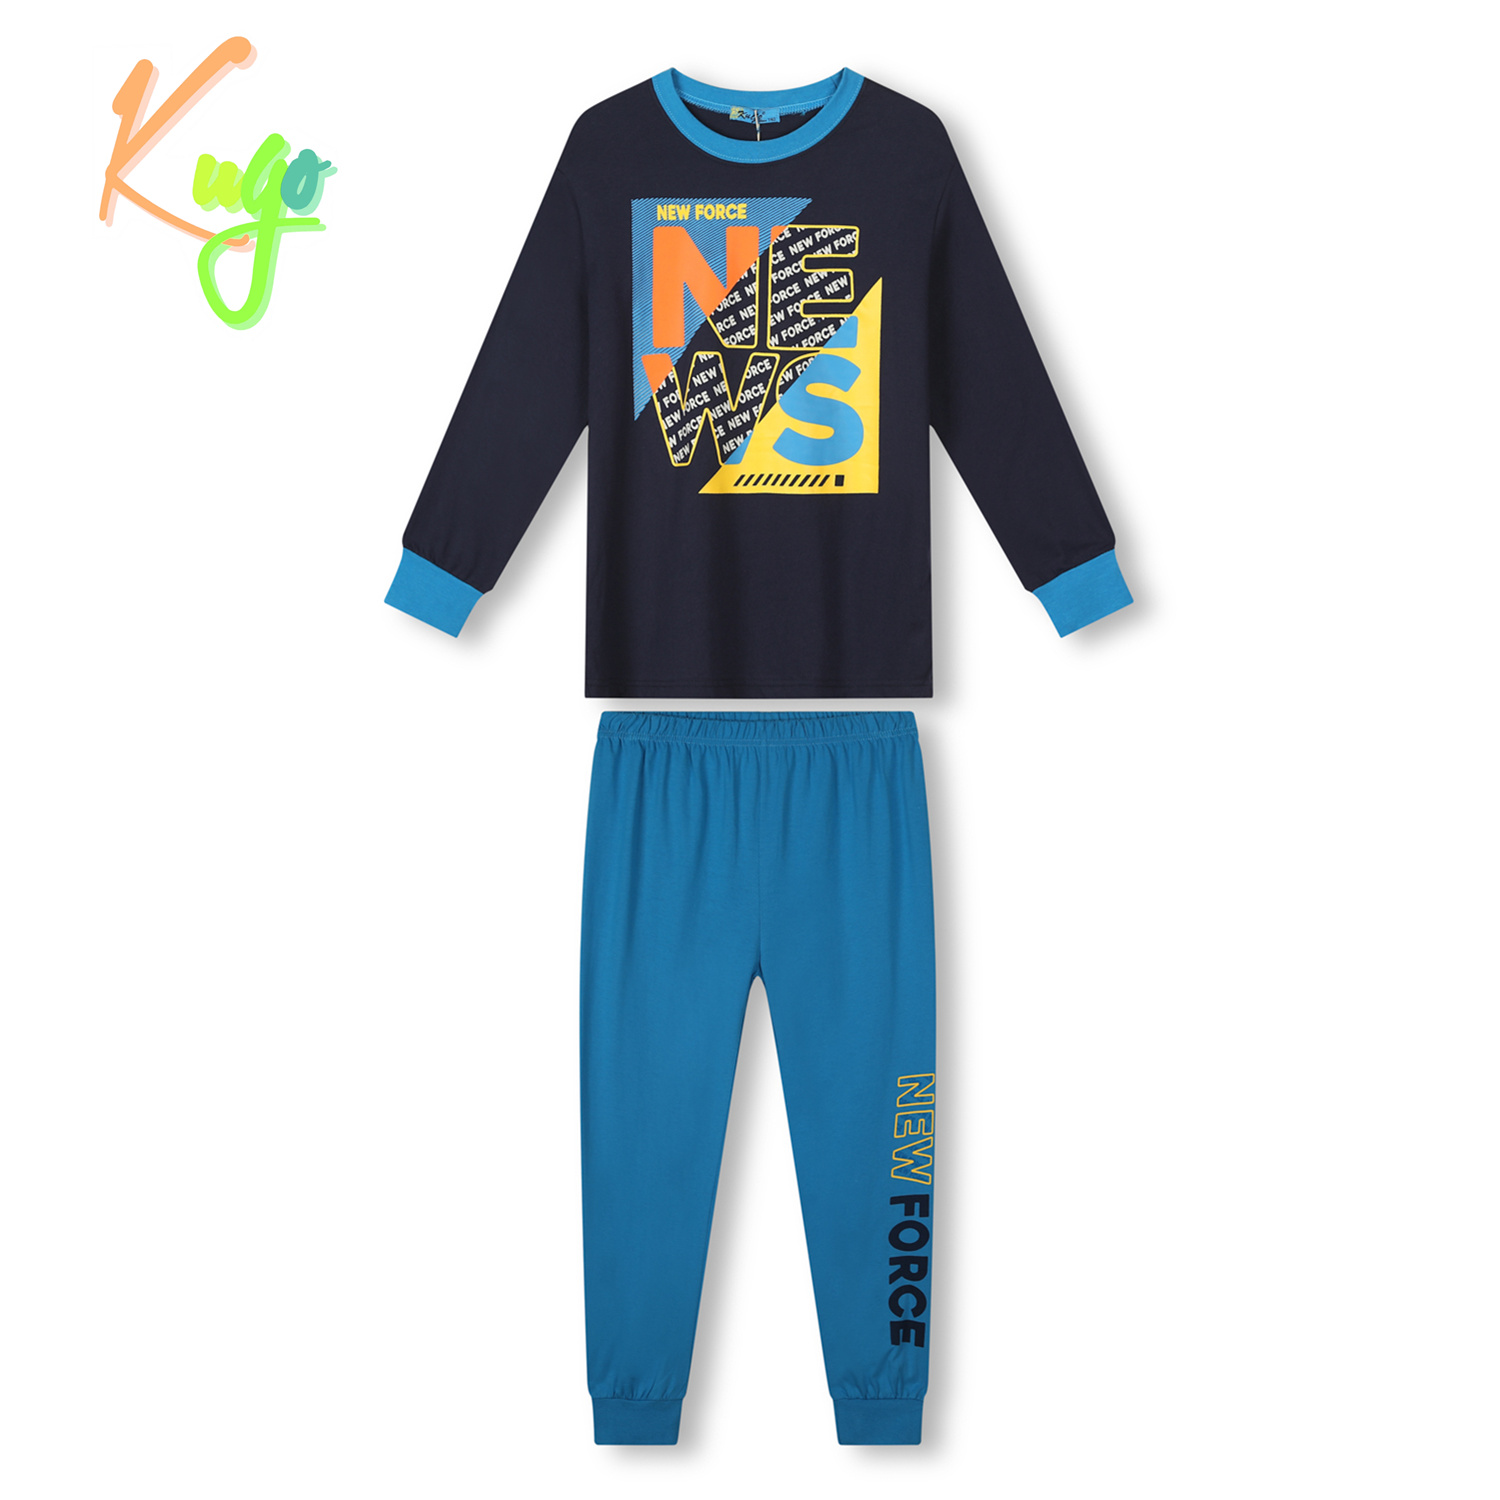 Chlapecké pyžamo - KUGO MP3782, tmavě modrá Barva: Modrá tmavě, Velikost: 134